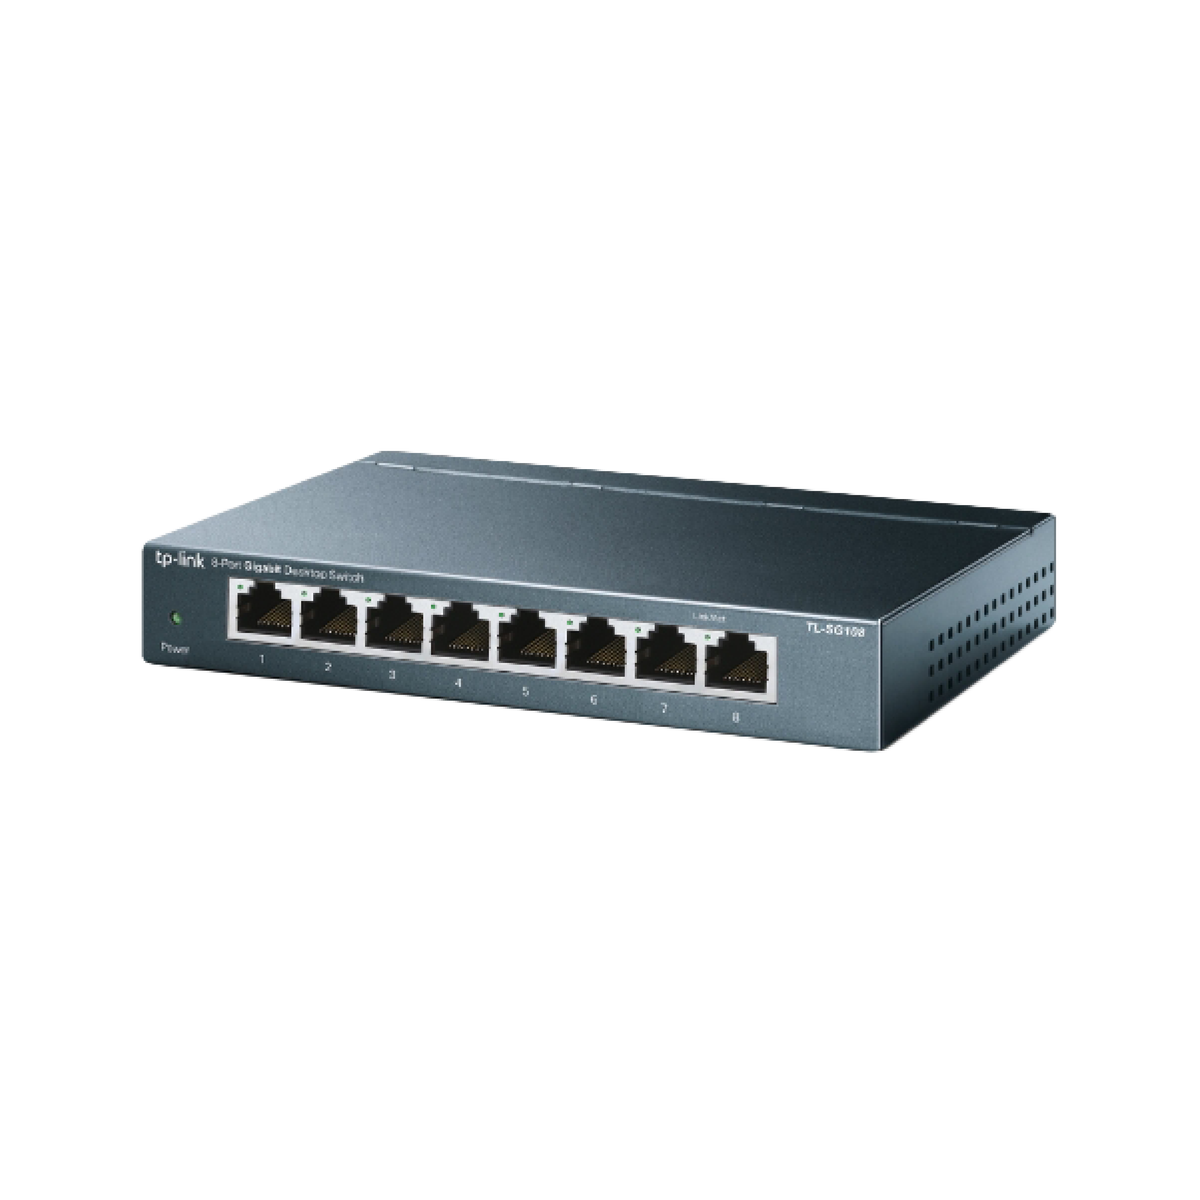 TP-Link TL-SG108 8 Port Gigabit Network Switch